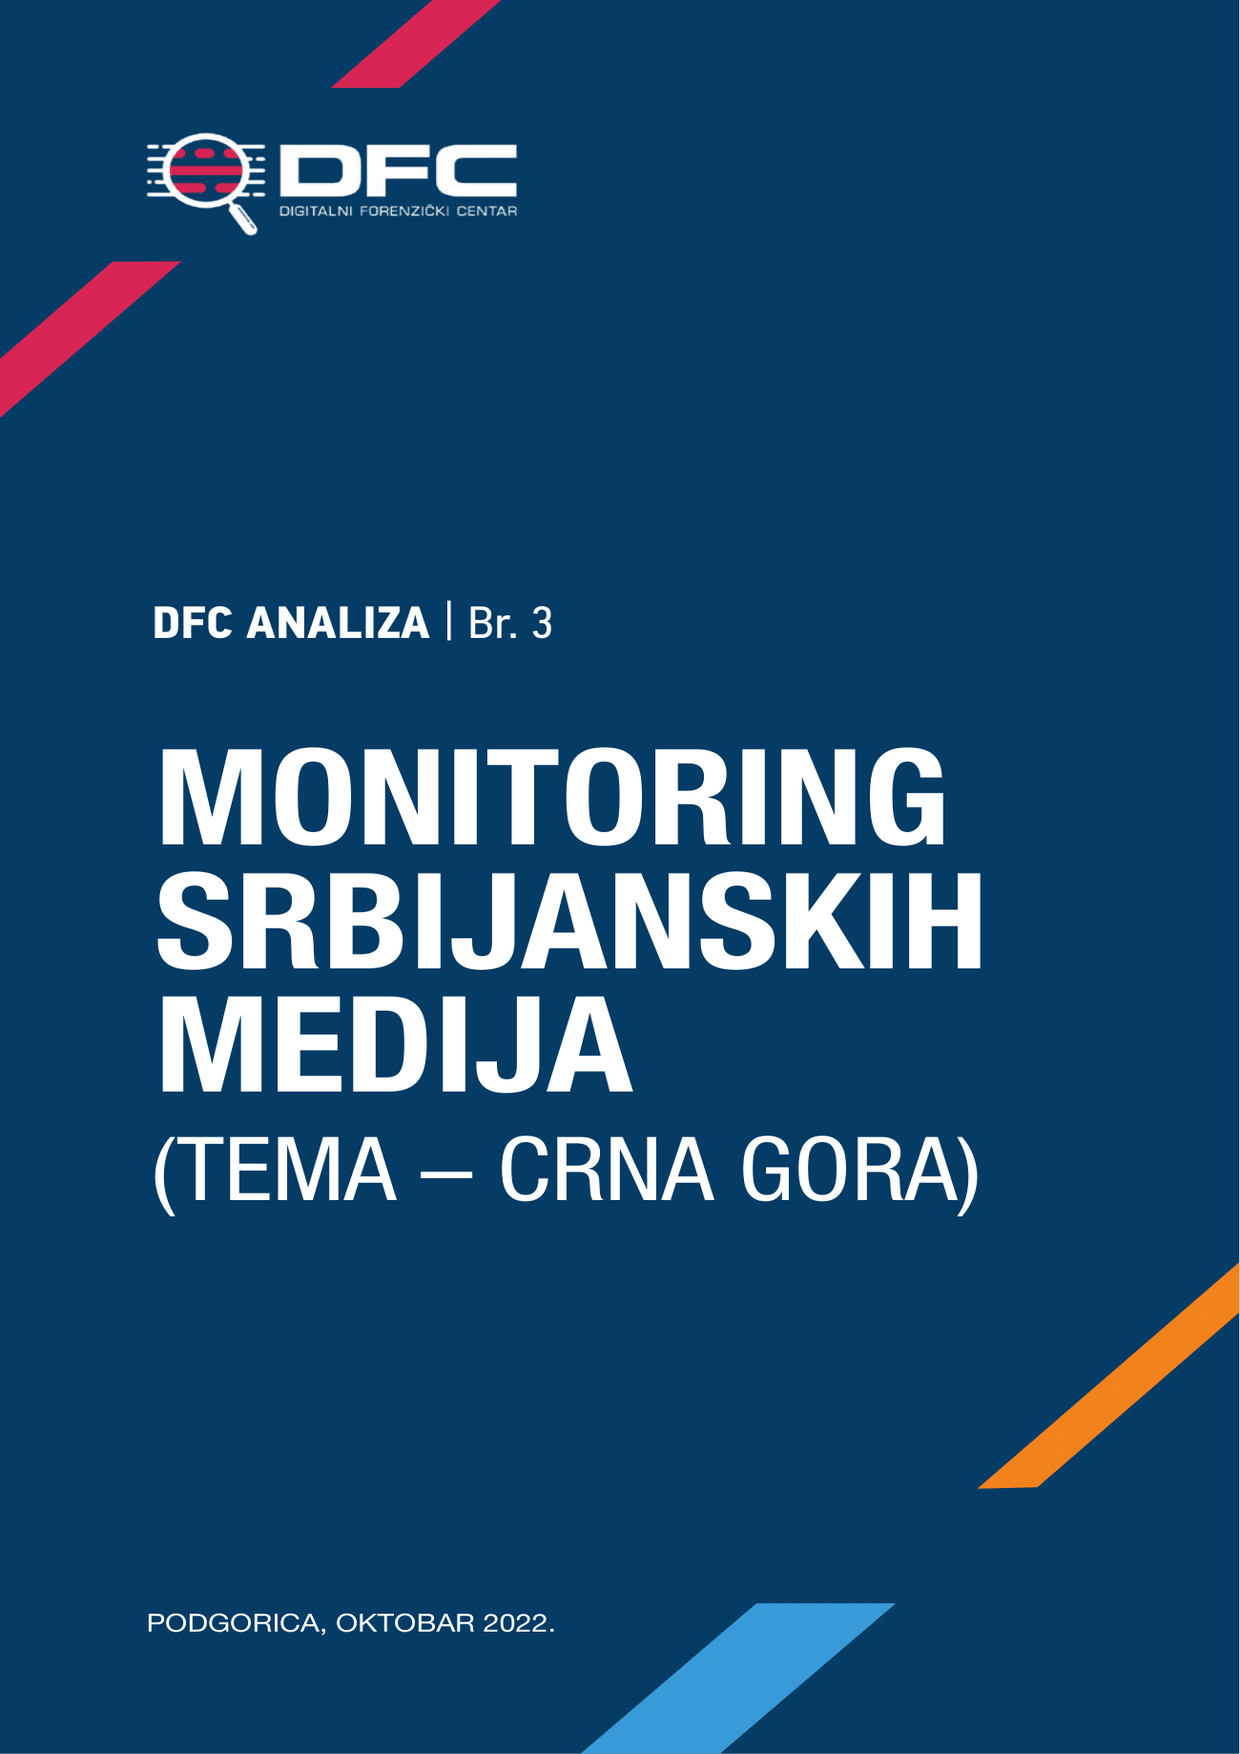 rsz_monitoring-srbijanskih-medija-final-01